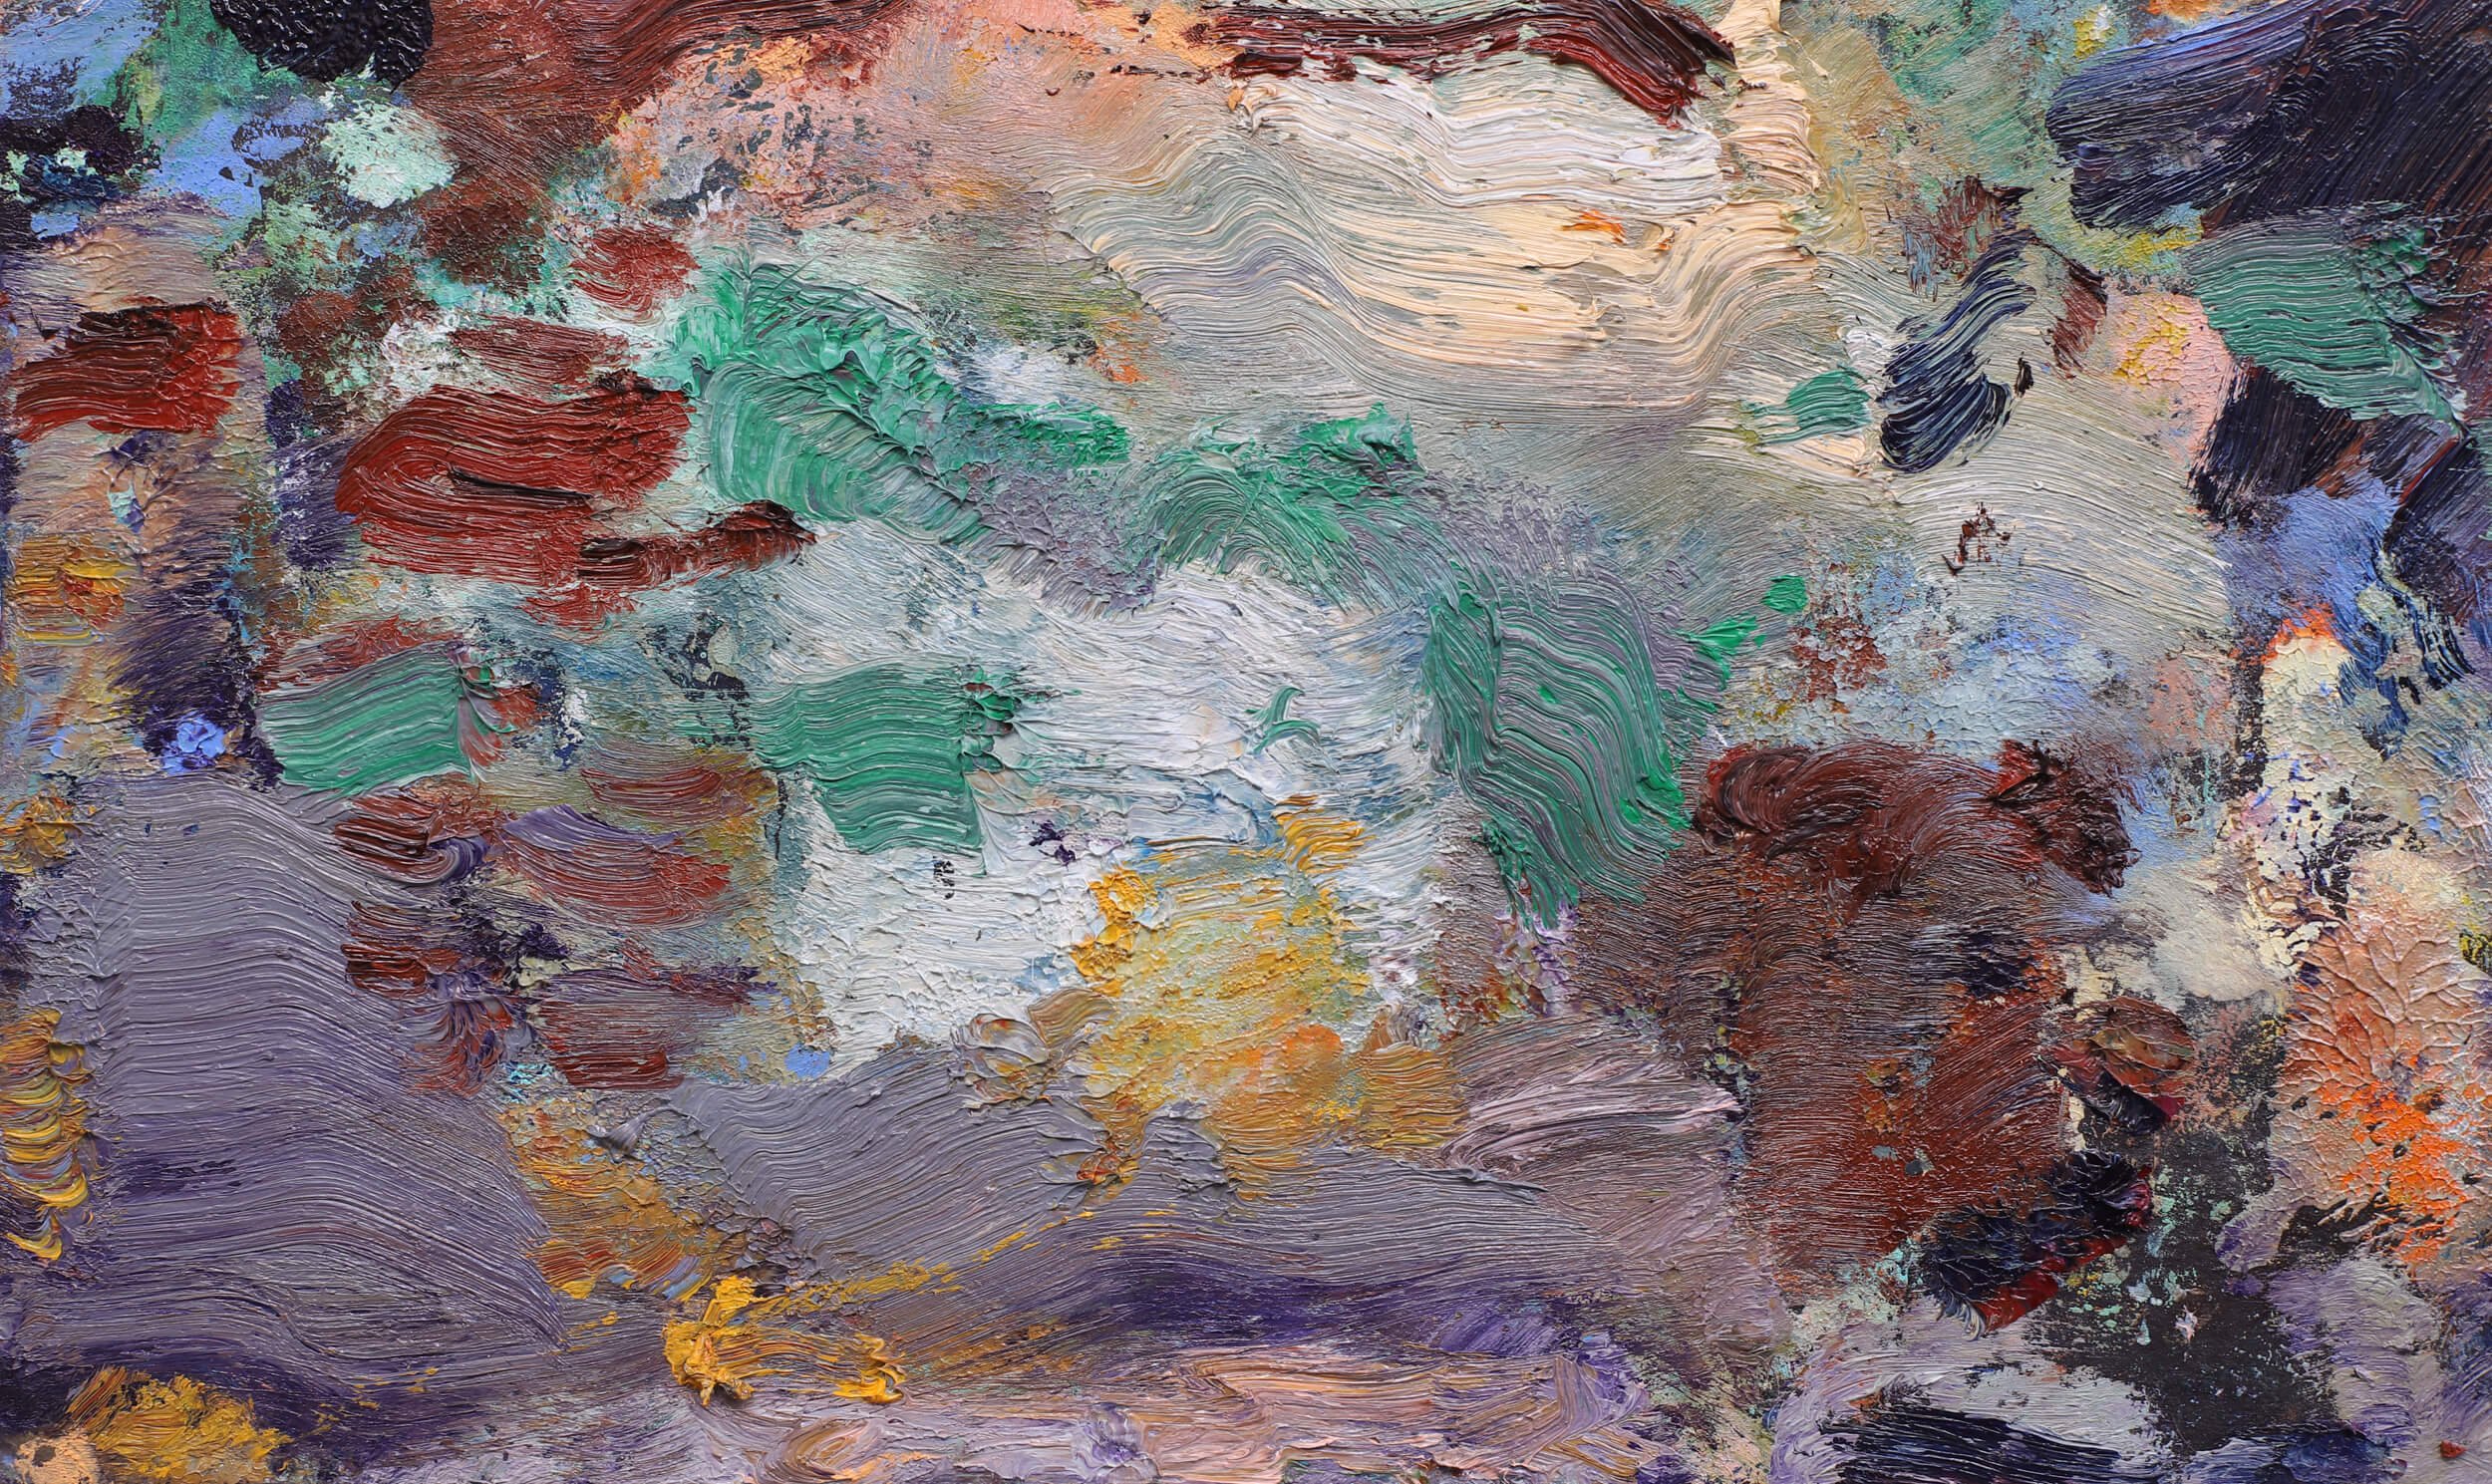 shifting-seasons-abstract-painting.jpg